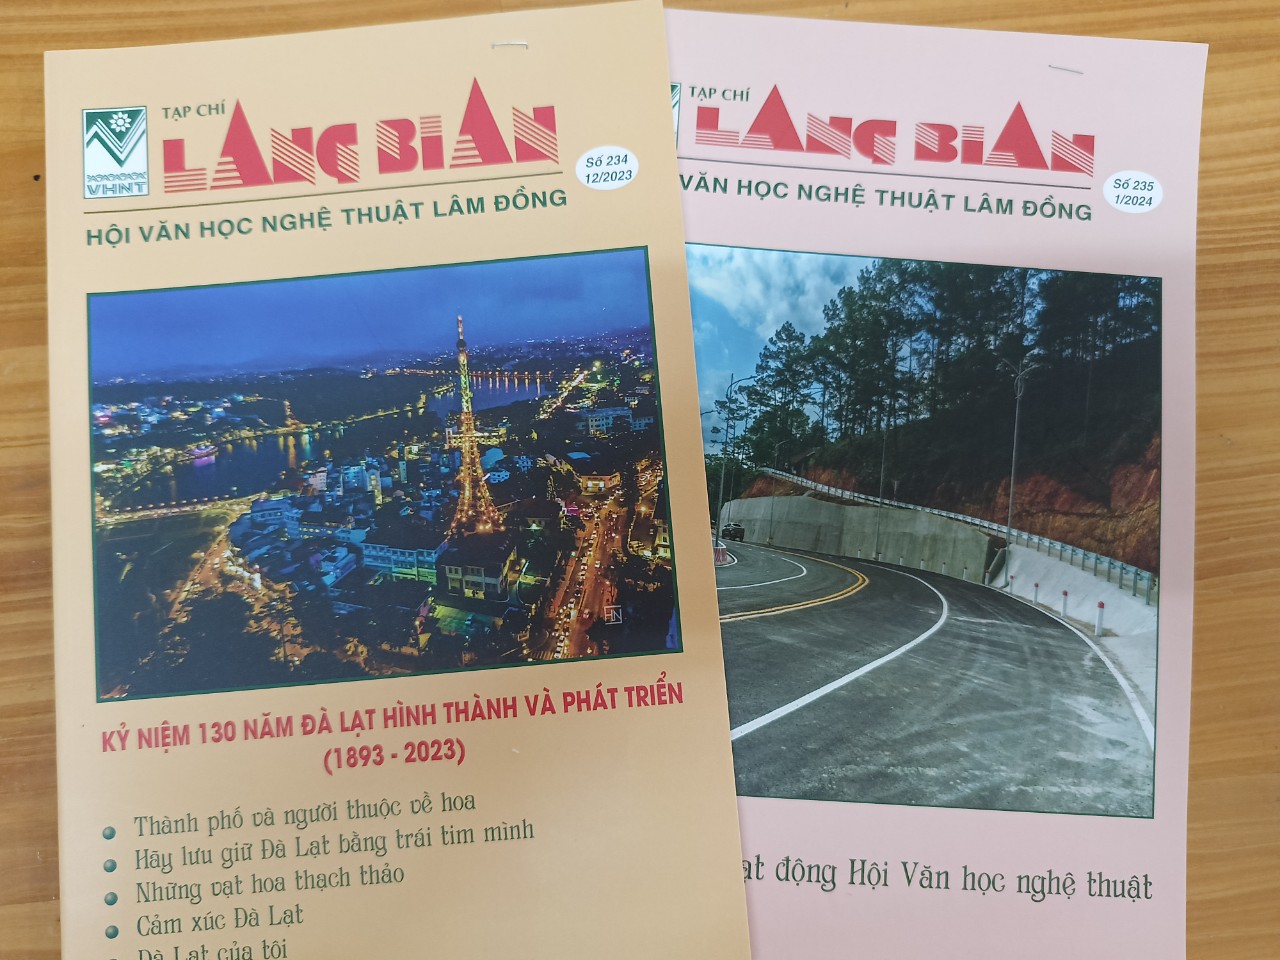 Ảnh: Tạp chí Lang Bian vừa tục bản ghi dấu ấn bởi các tác phẩm văn học nghệ thuật chất lượng 

